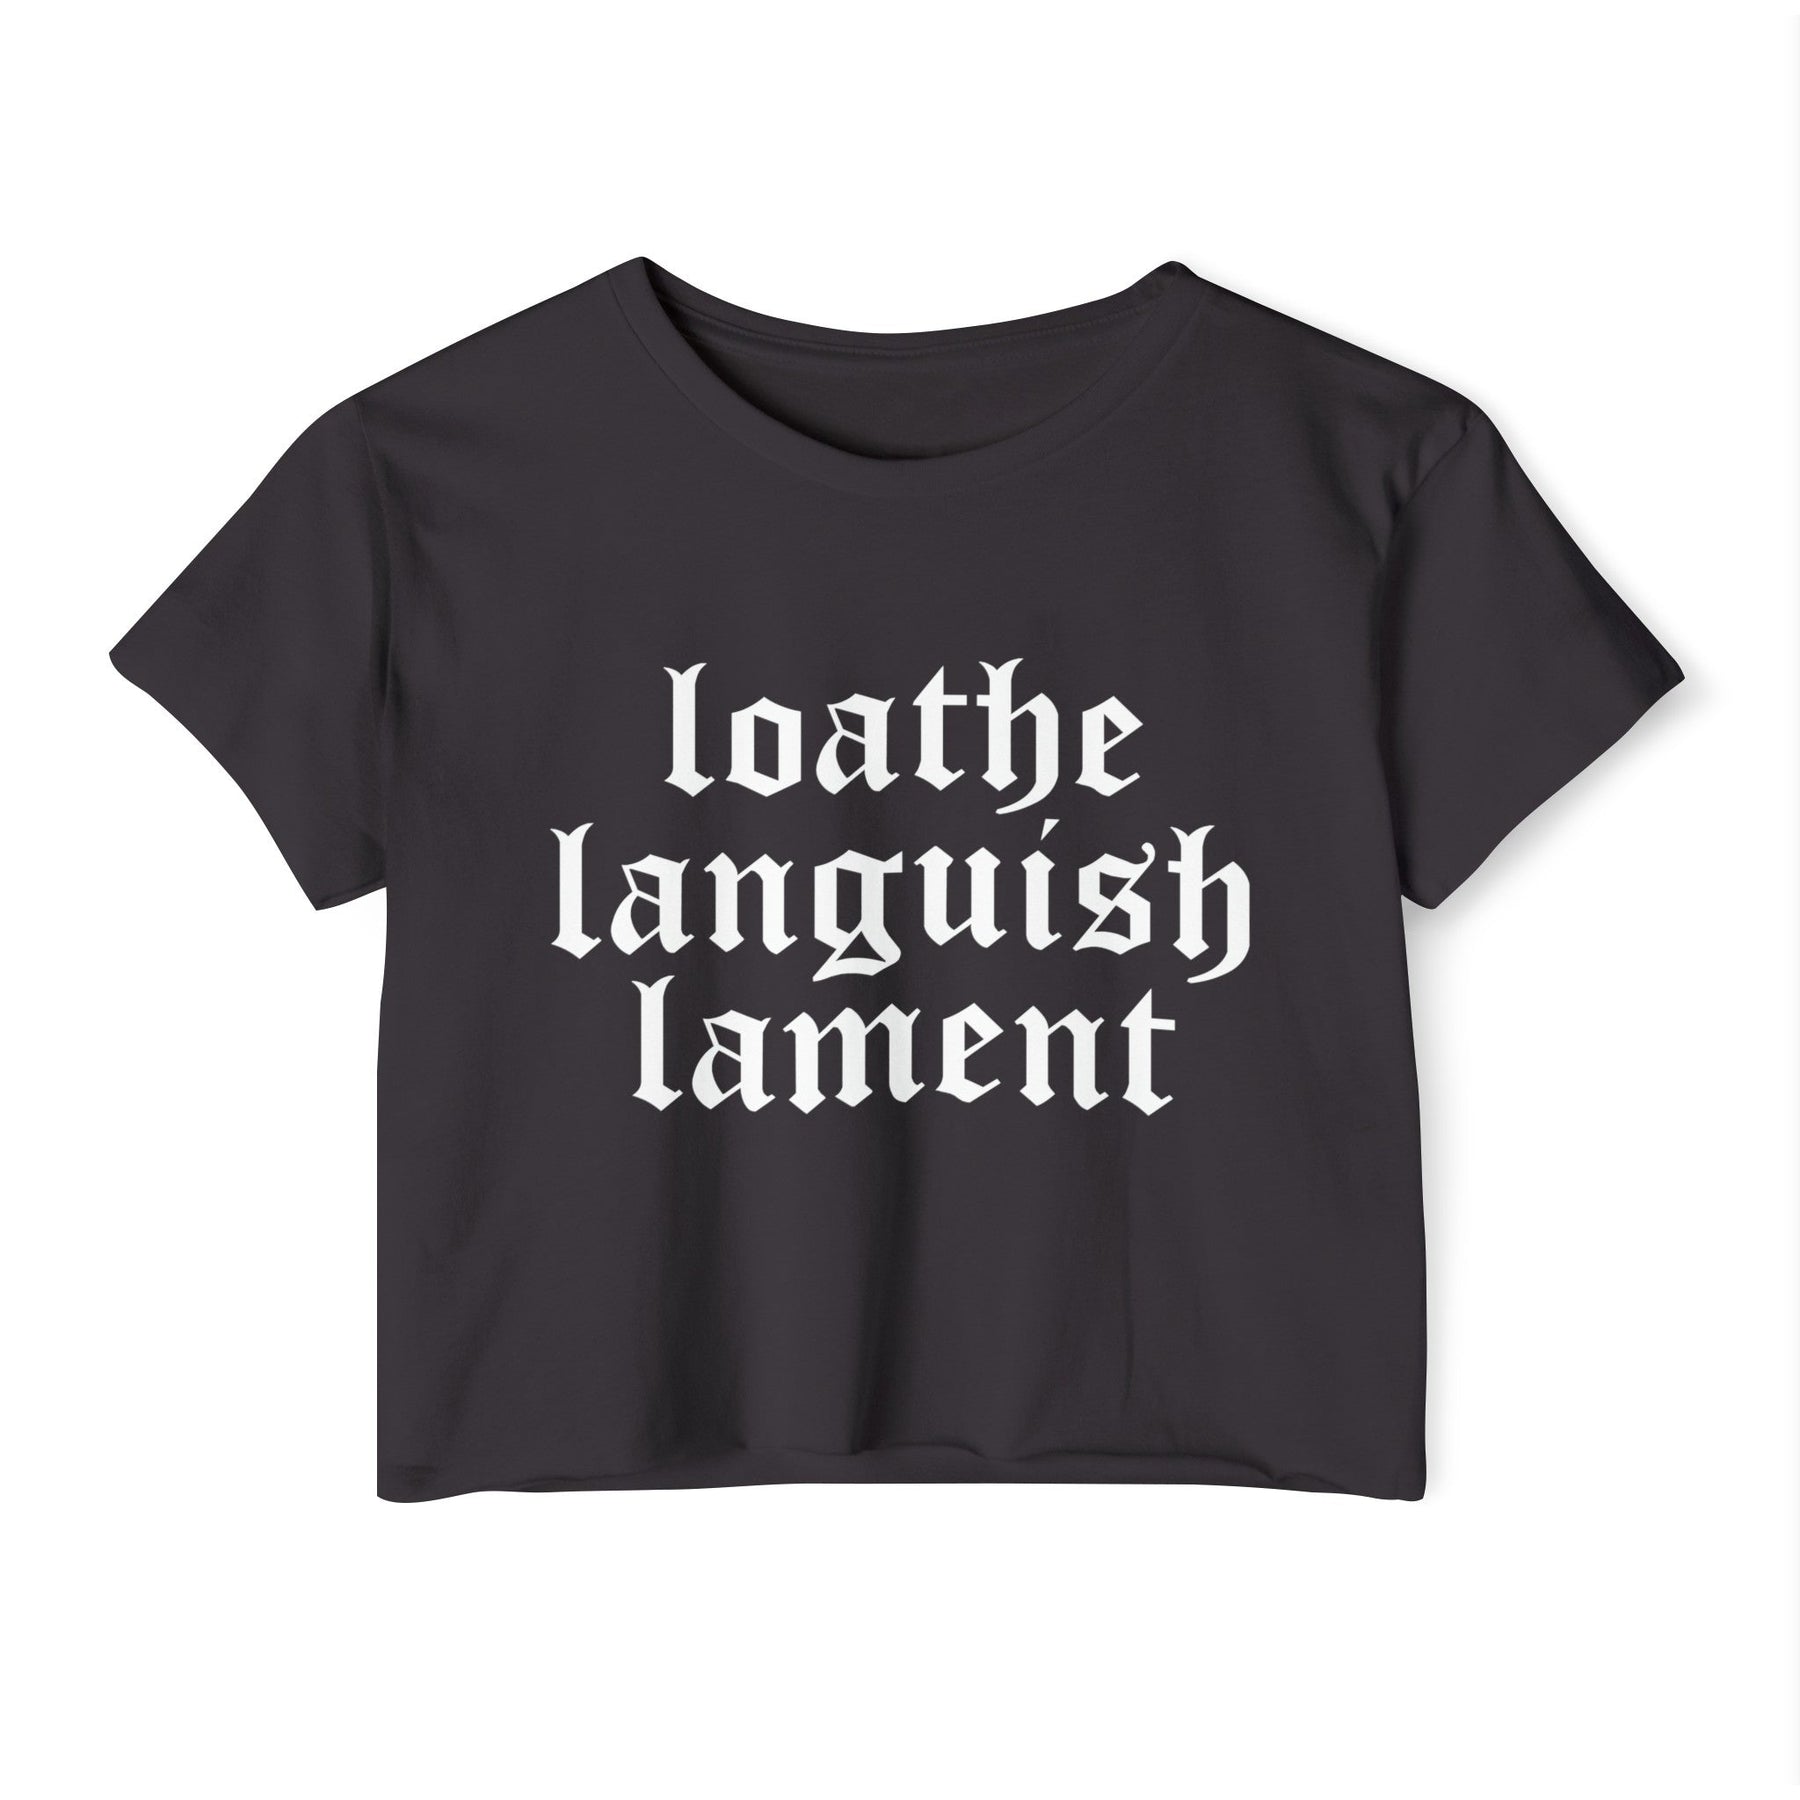 Loathe Languish Lament Women's Lightweight Crop Top - Goth Cloth Co.T - Shirt19220593871033247682